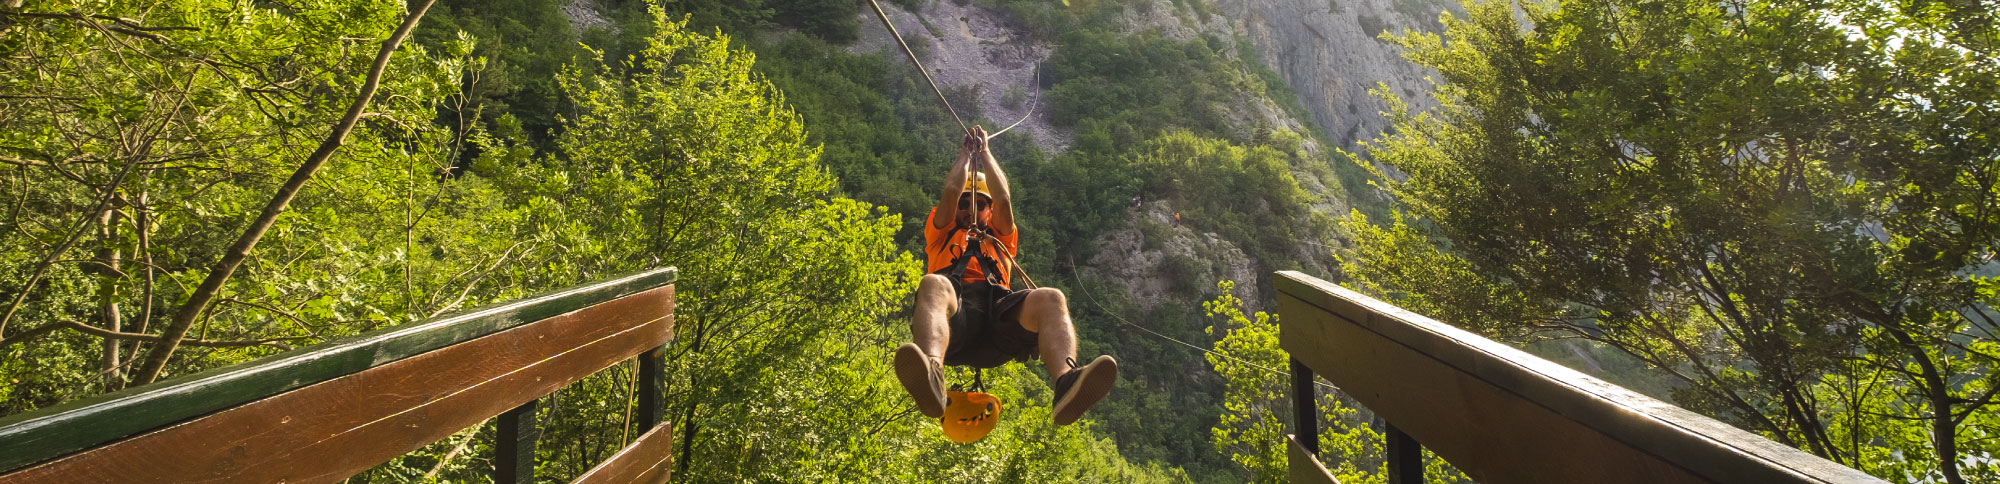 Adrenaline Activitties In Croatia